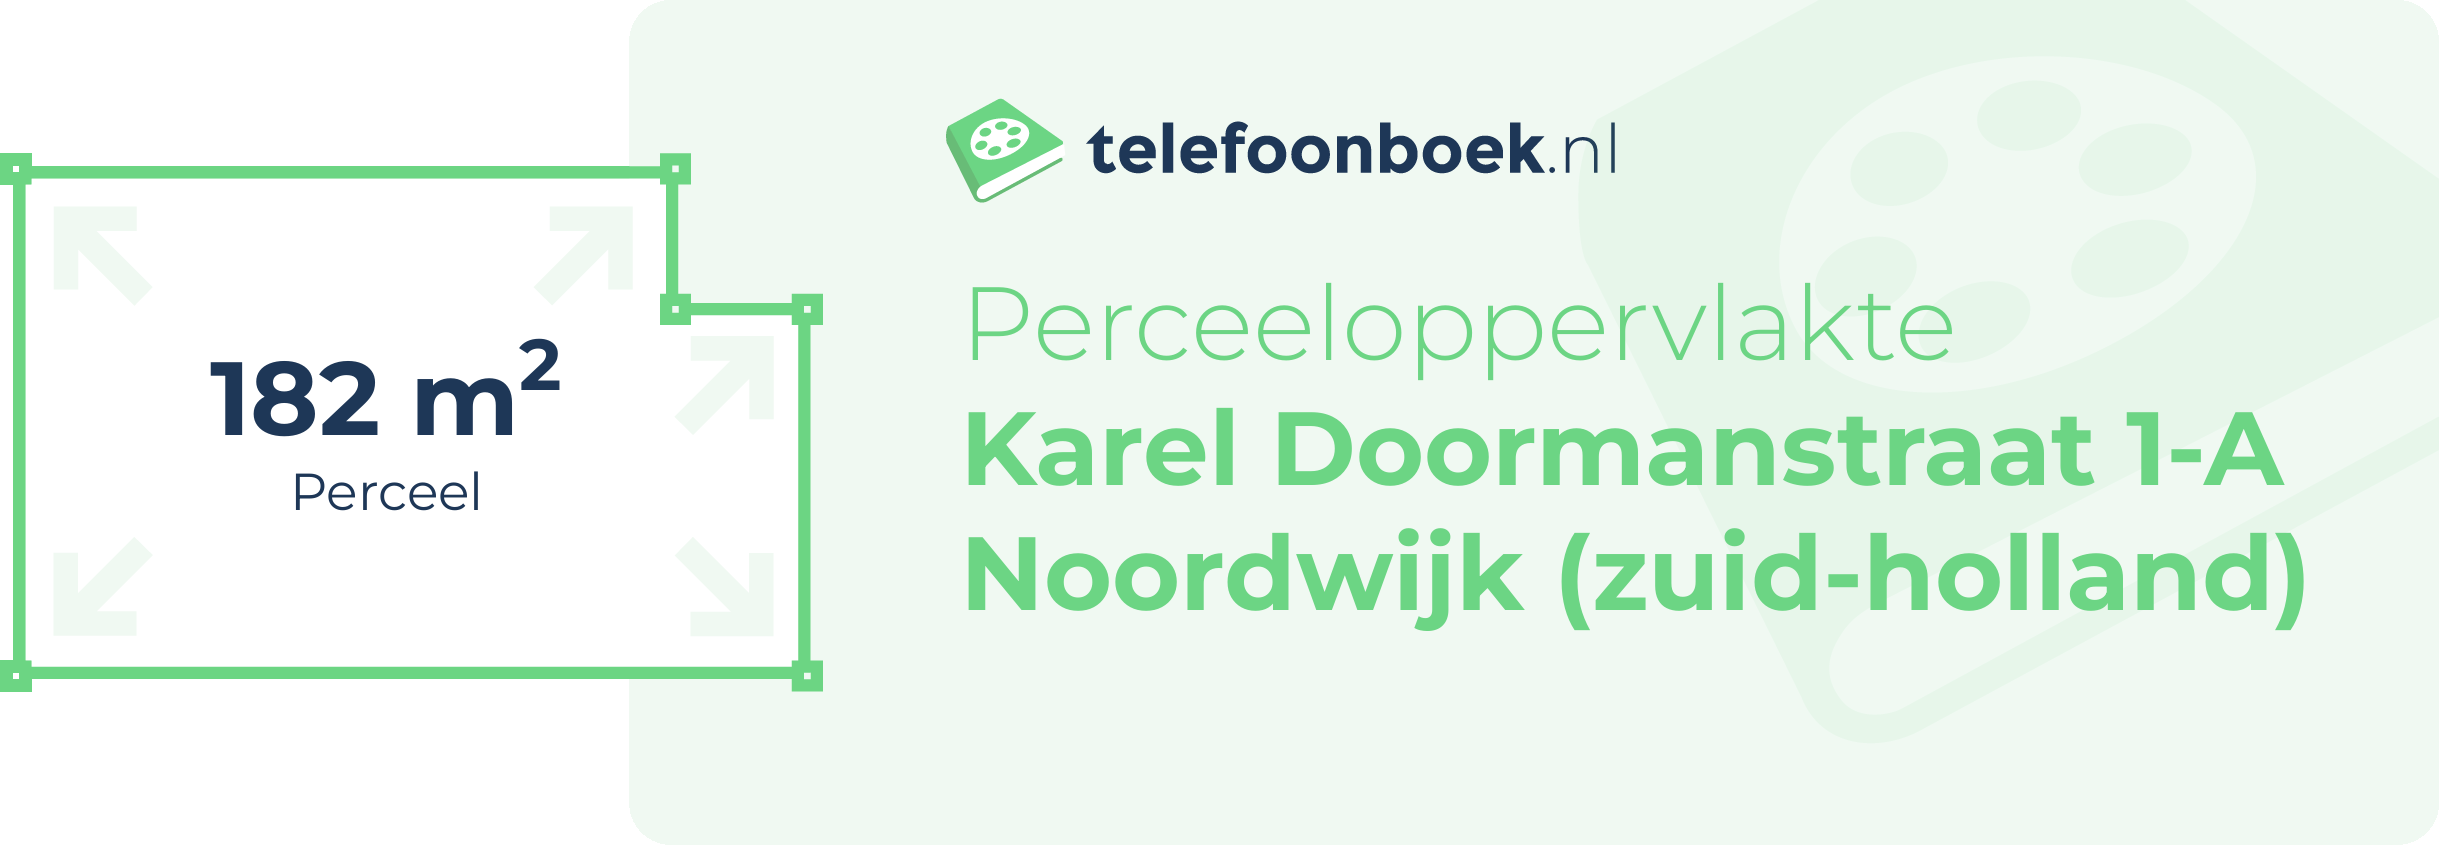 Perceeloppervlakte Karel Doormanstraat 1-A Noordwijk (Zuid-Holland)